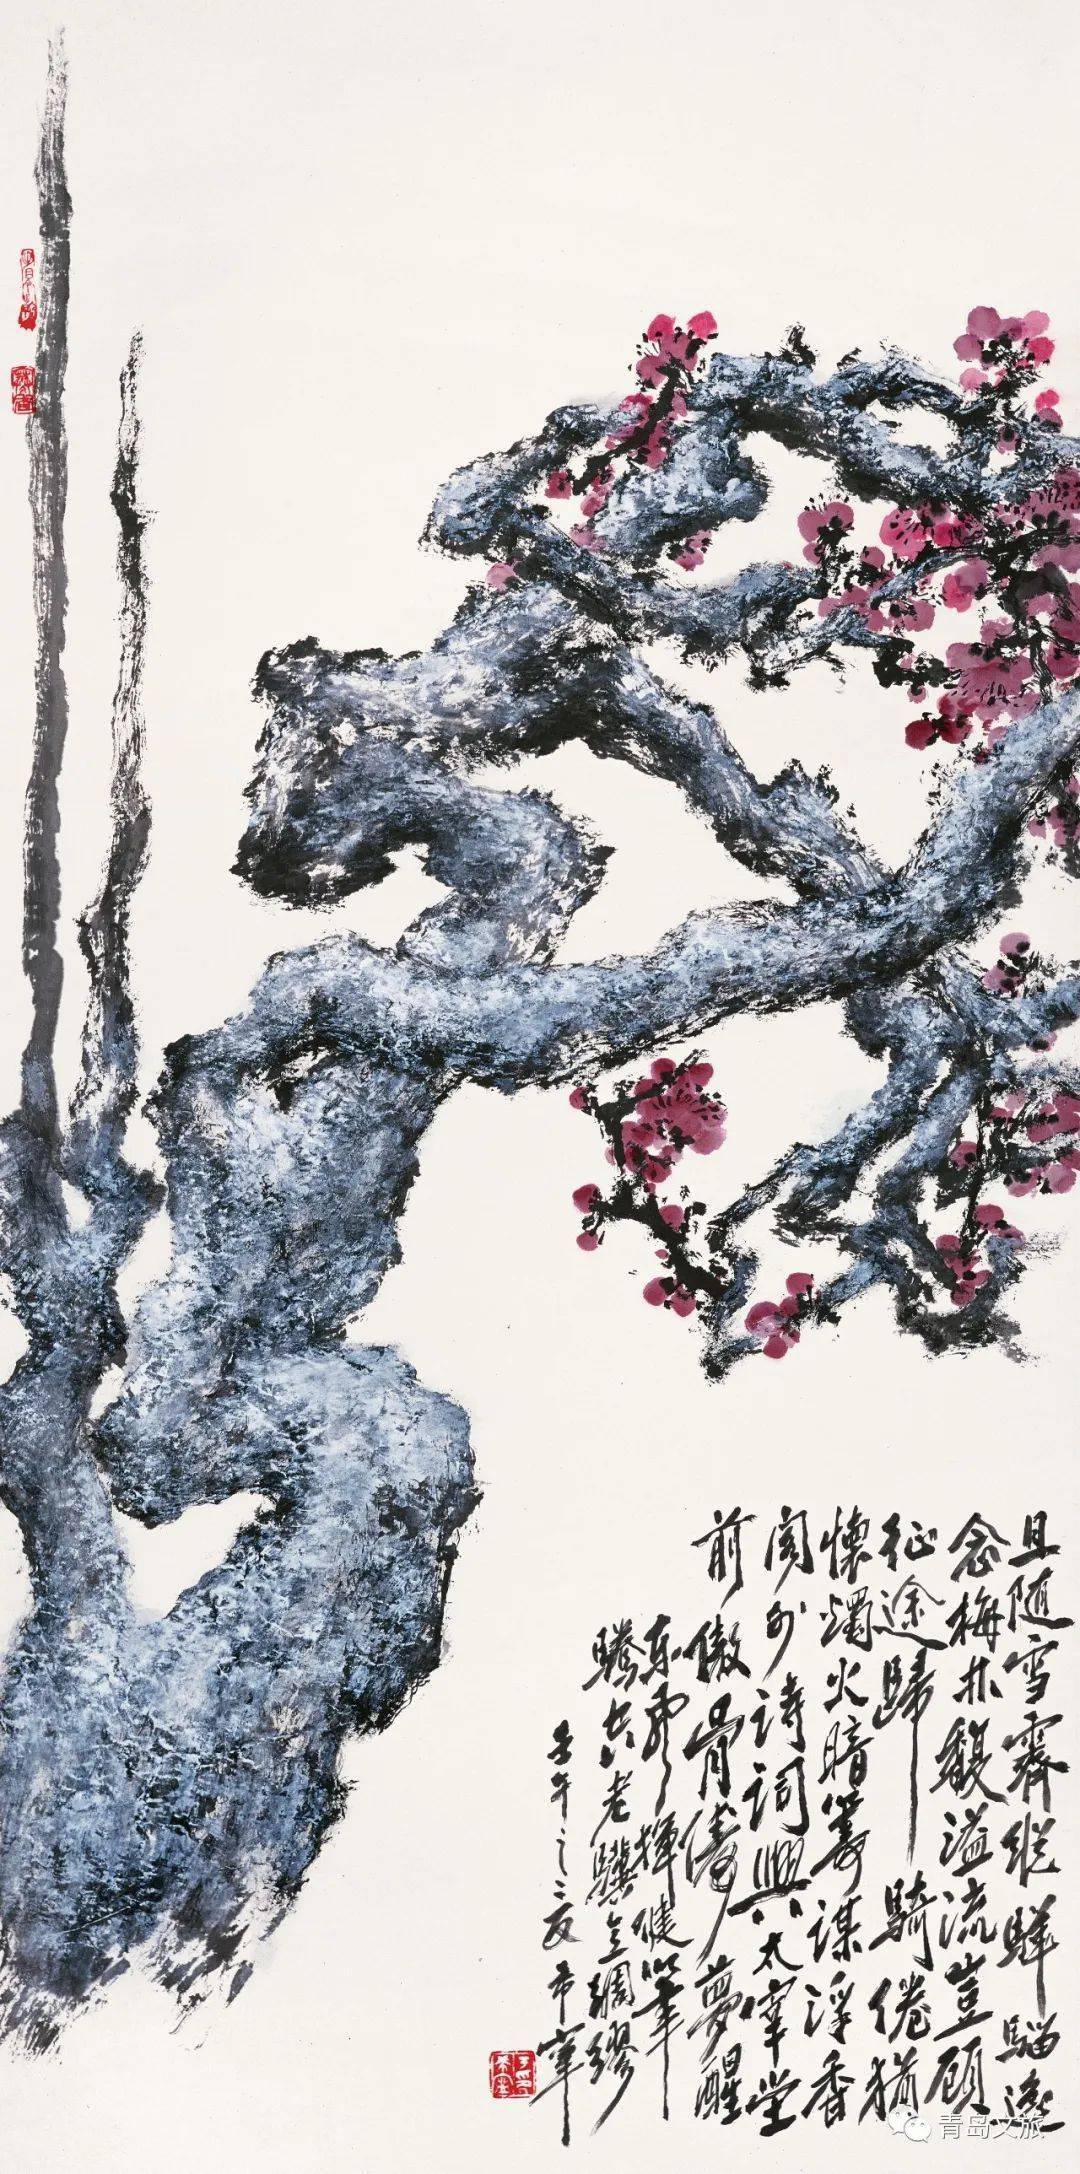 沈光伟见过于希宁最早的一本画册,是1936年由潍坊画家社团同志画社